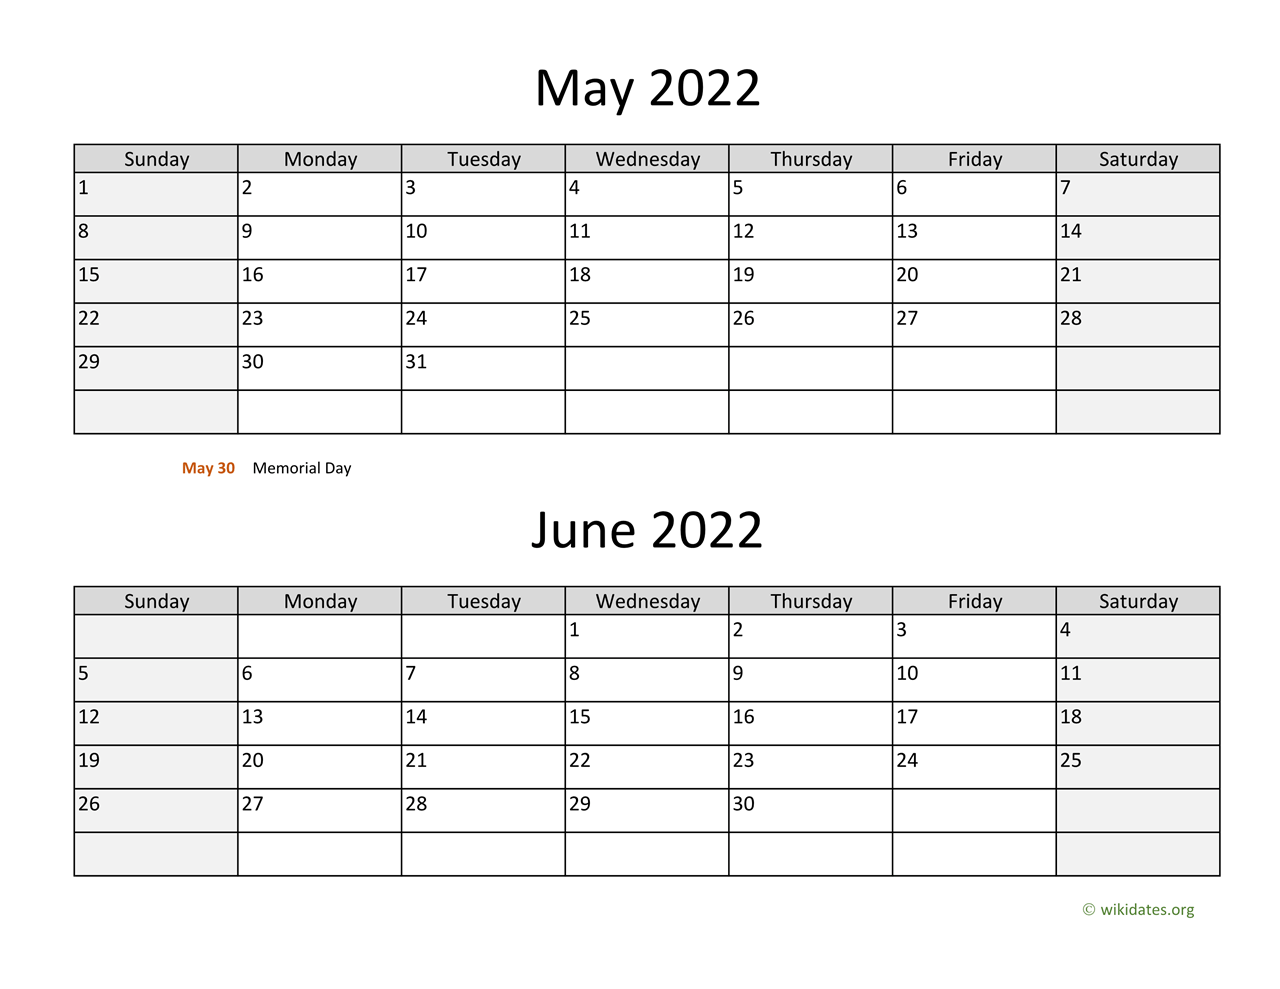 May and June 2022 Calendar